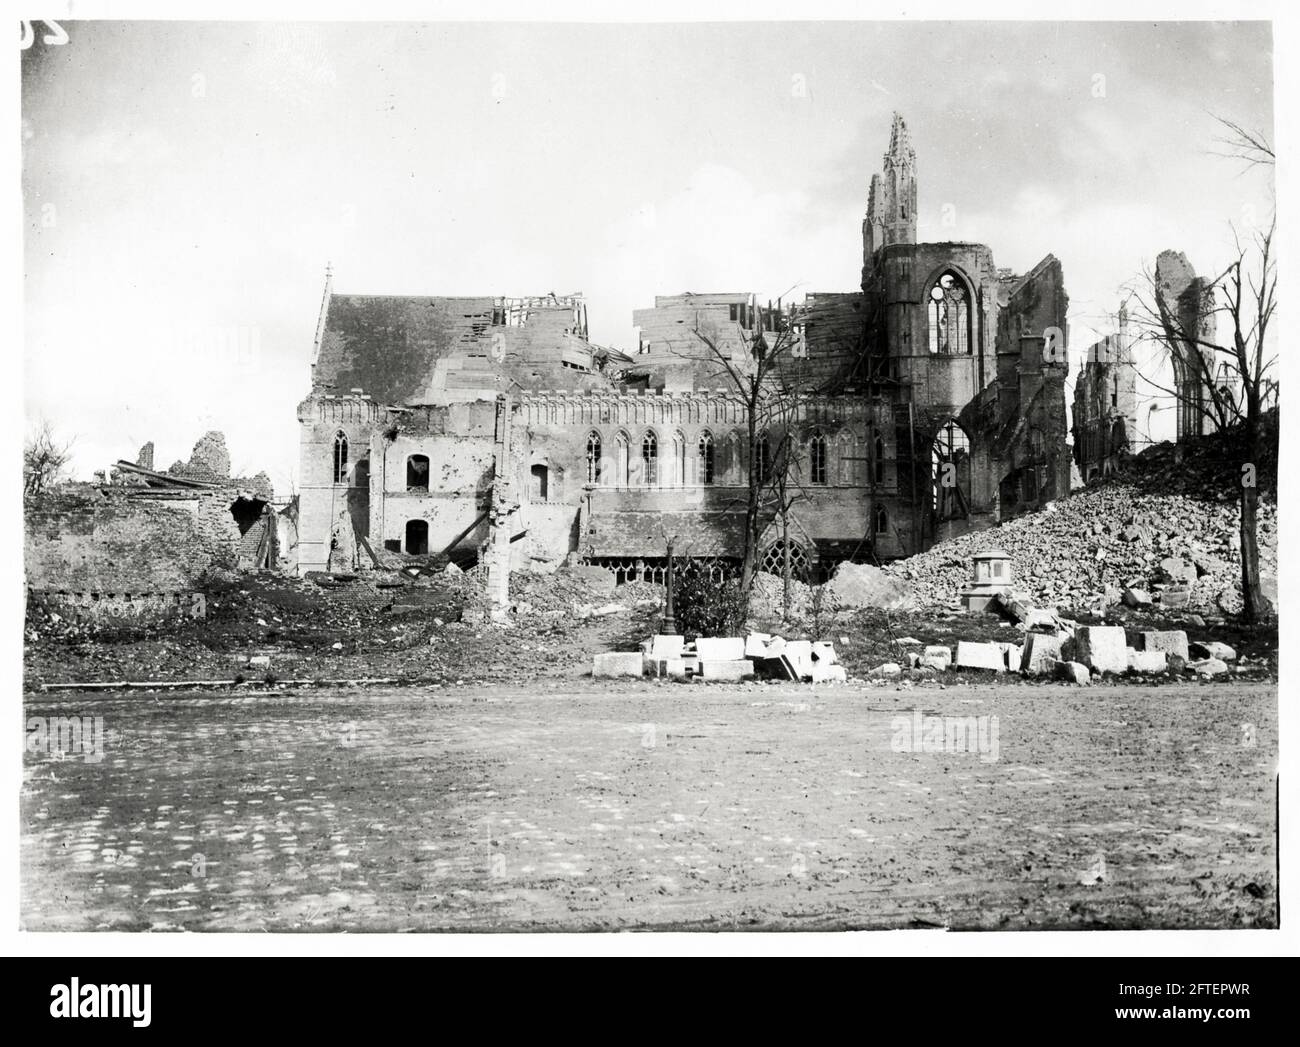 Première Guerre mondiale, première Guerre mondiale, Front occidental - ruines de la cathédrale après bombardement, Ypres, Flandre Occidentale, Belgique Banque D'Images